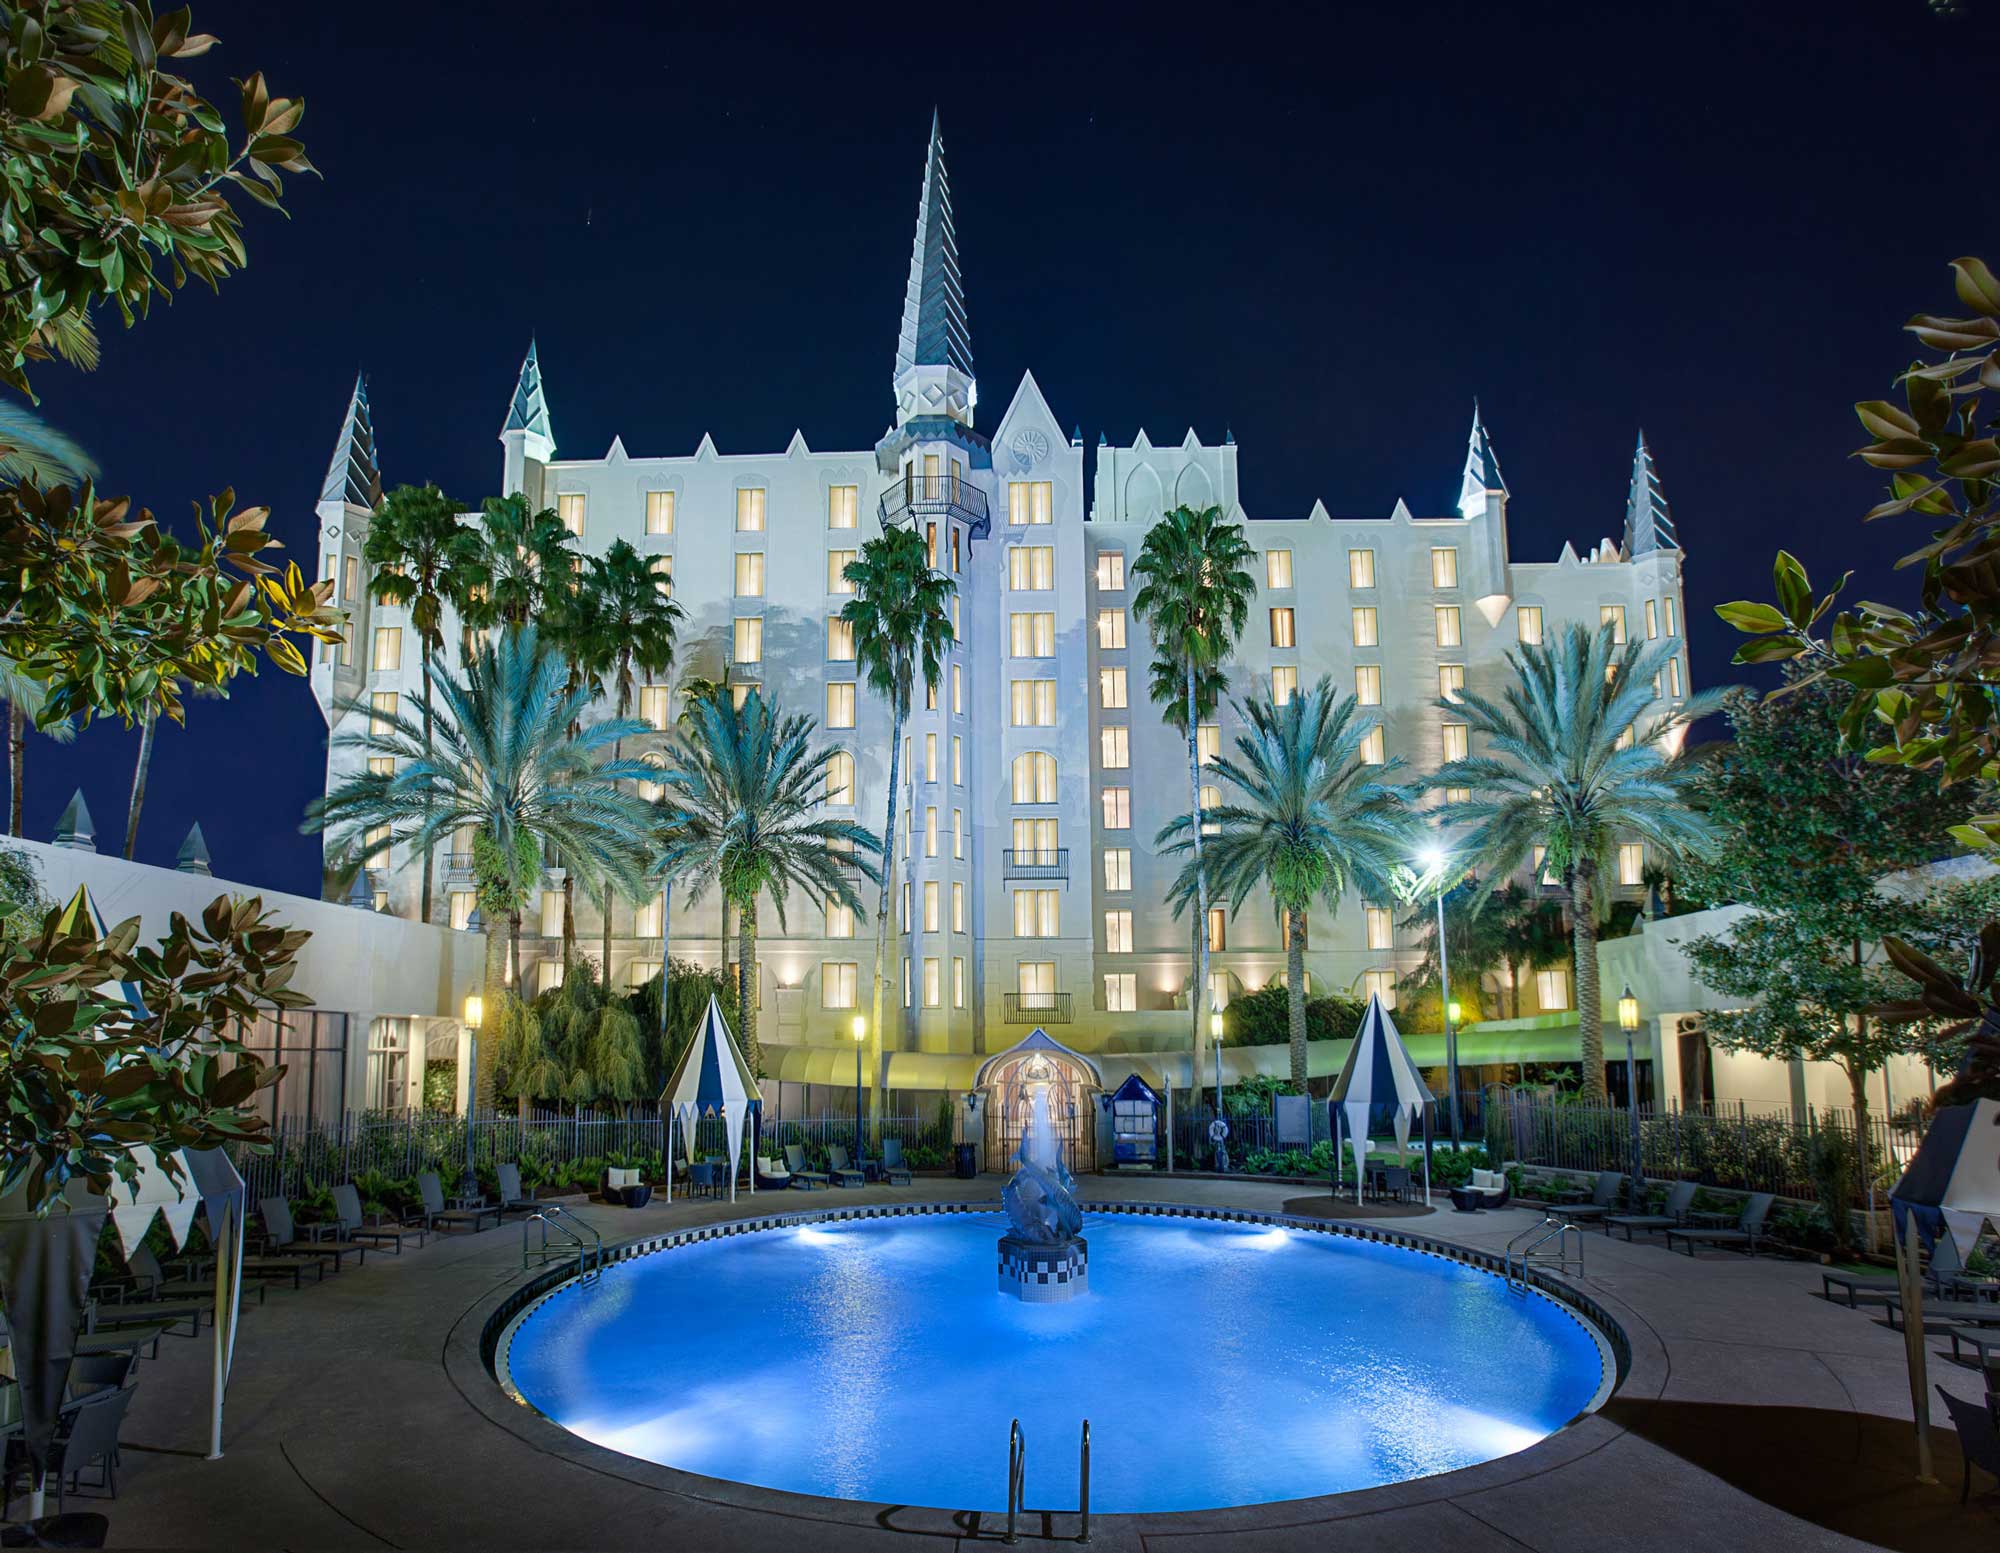 38 Wedding Venues You Have to See | Castle Hotel, Orlando, Florida